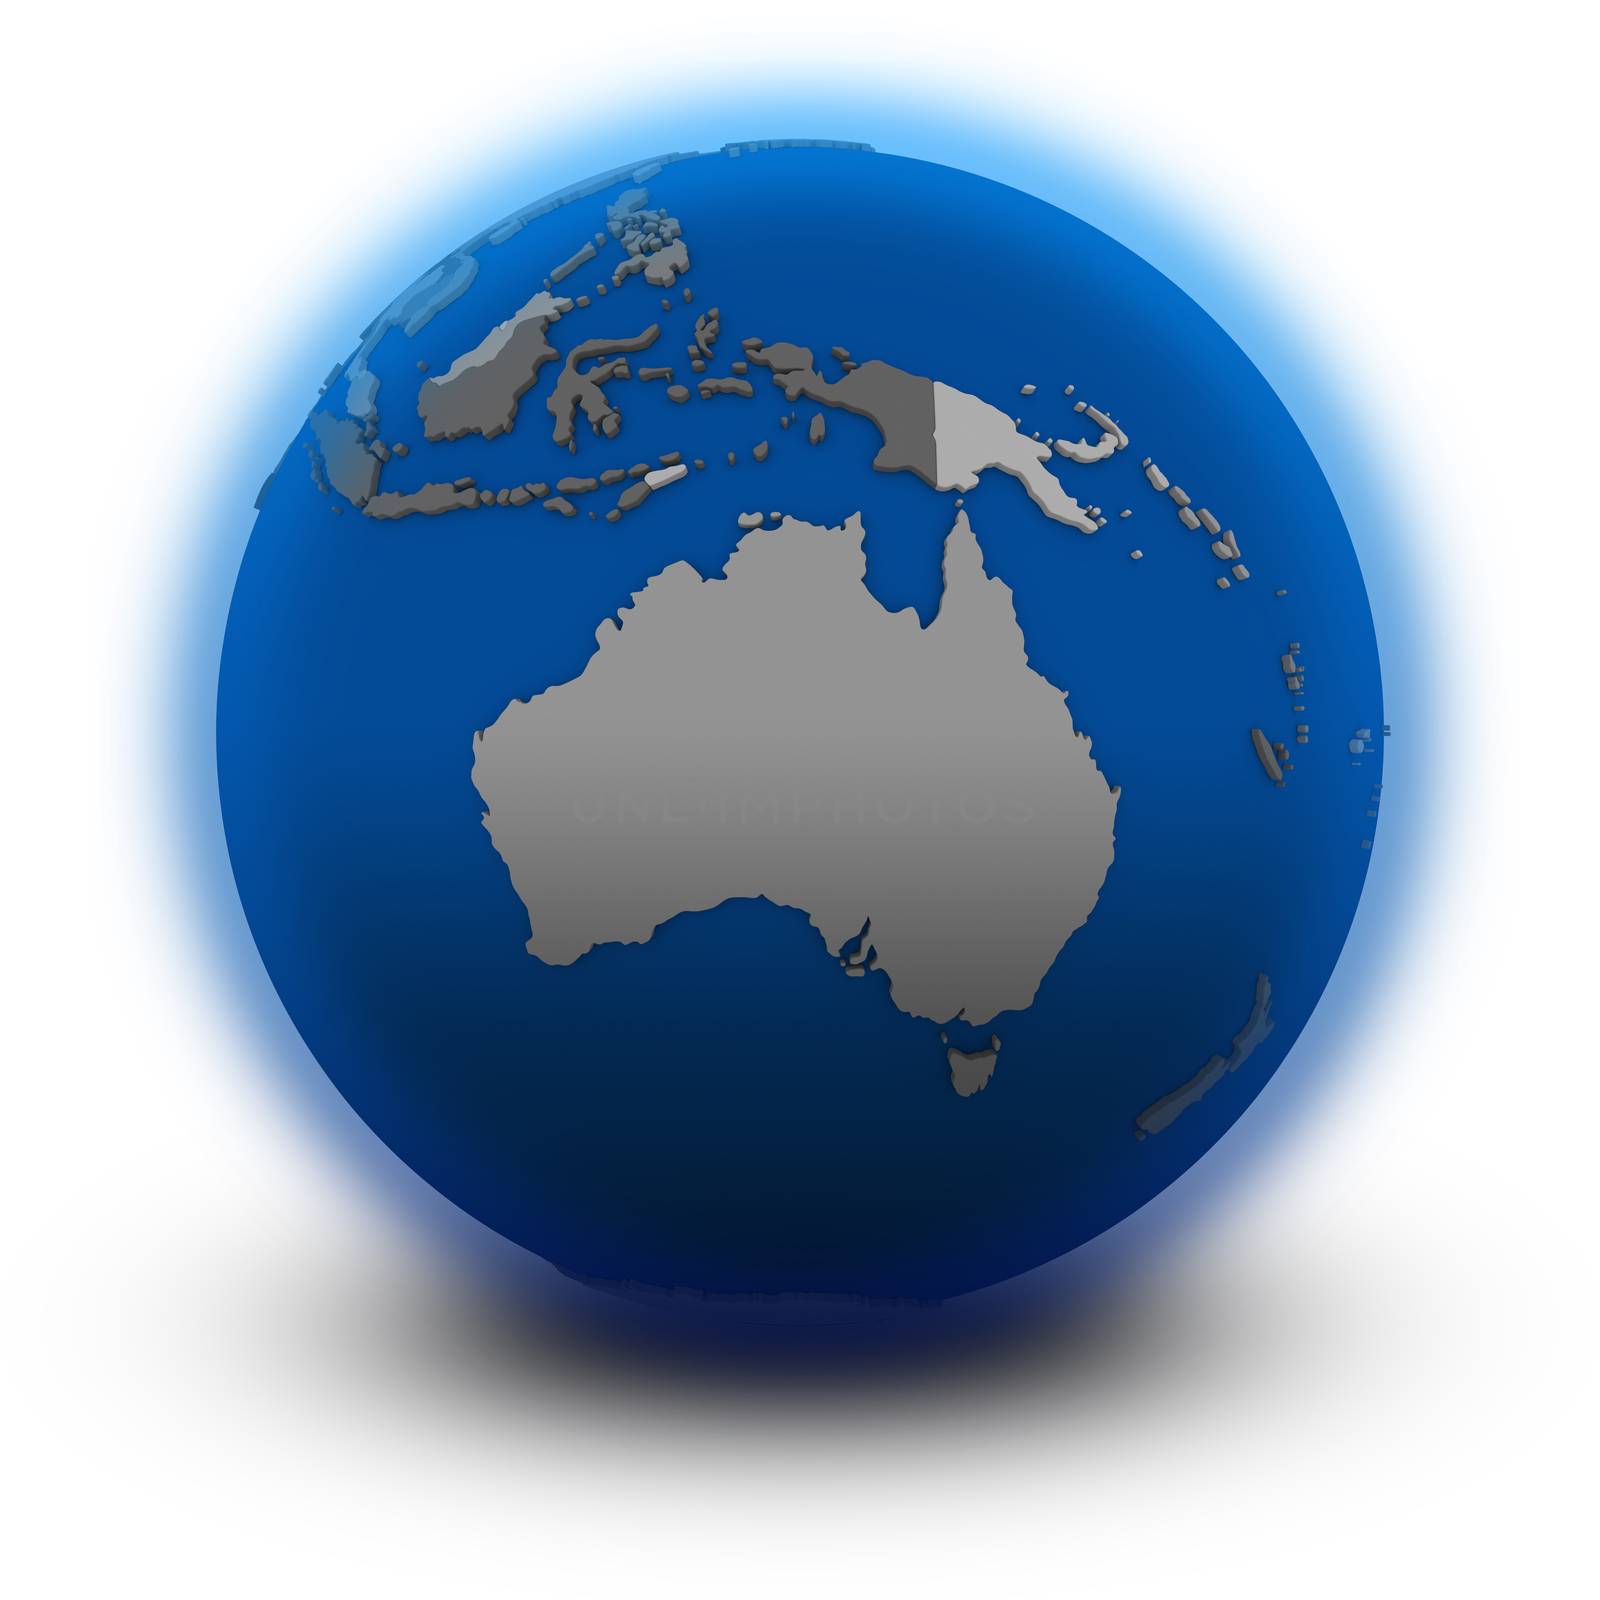 Australia on political globe, illustration isolated on white background